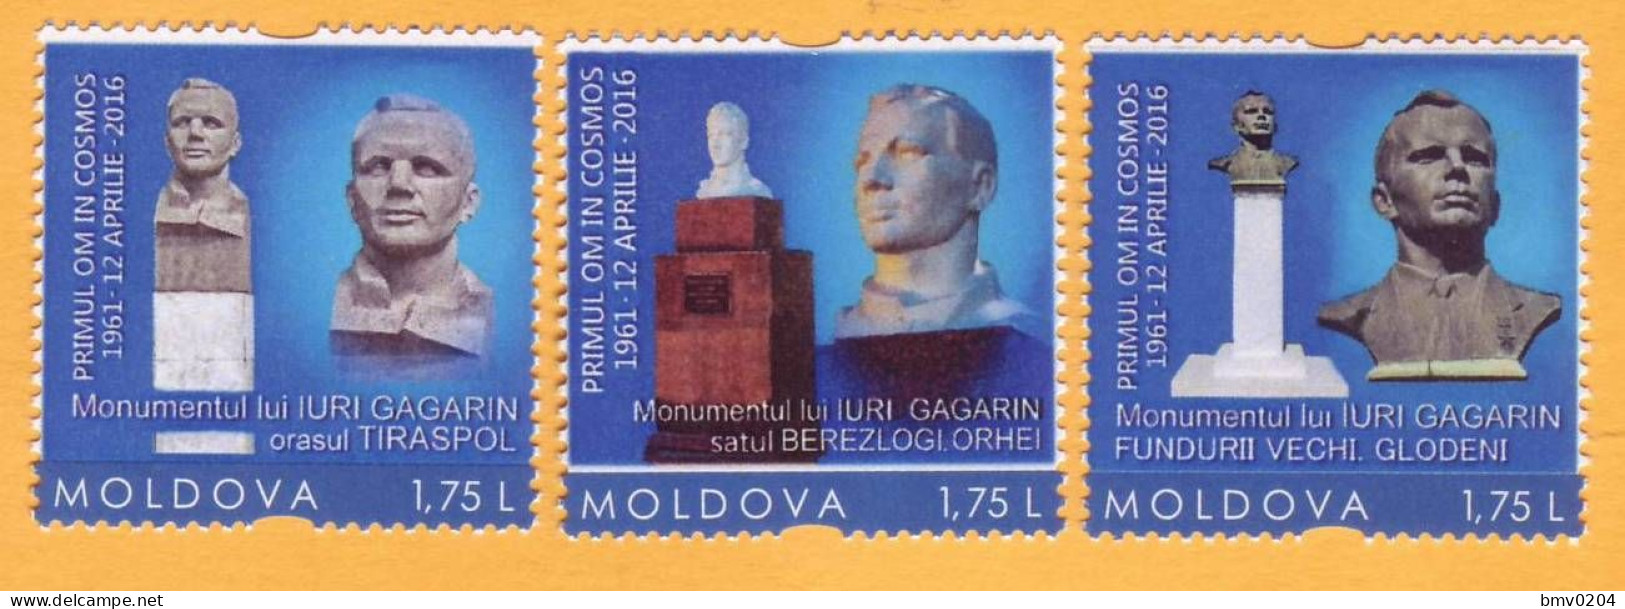 2016 Moldova Transnistria Russia  Yuri Gagarin. Personalized Stamps Space. Monument To Gagarin 3v Mint - Moldova